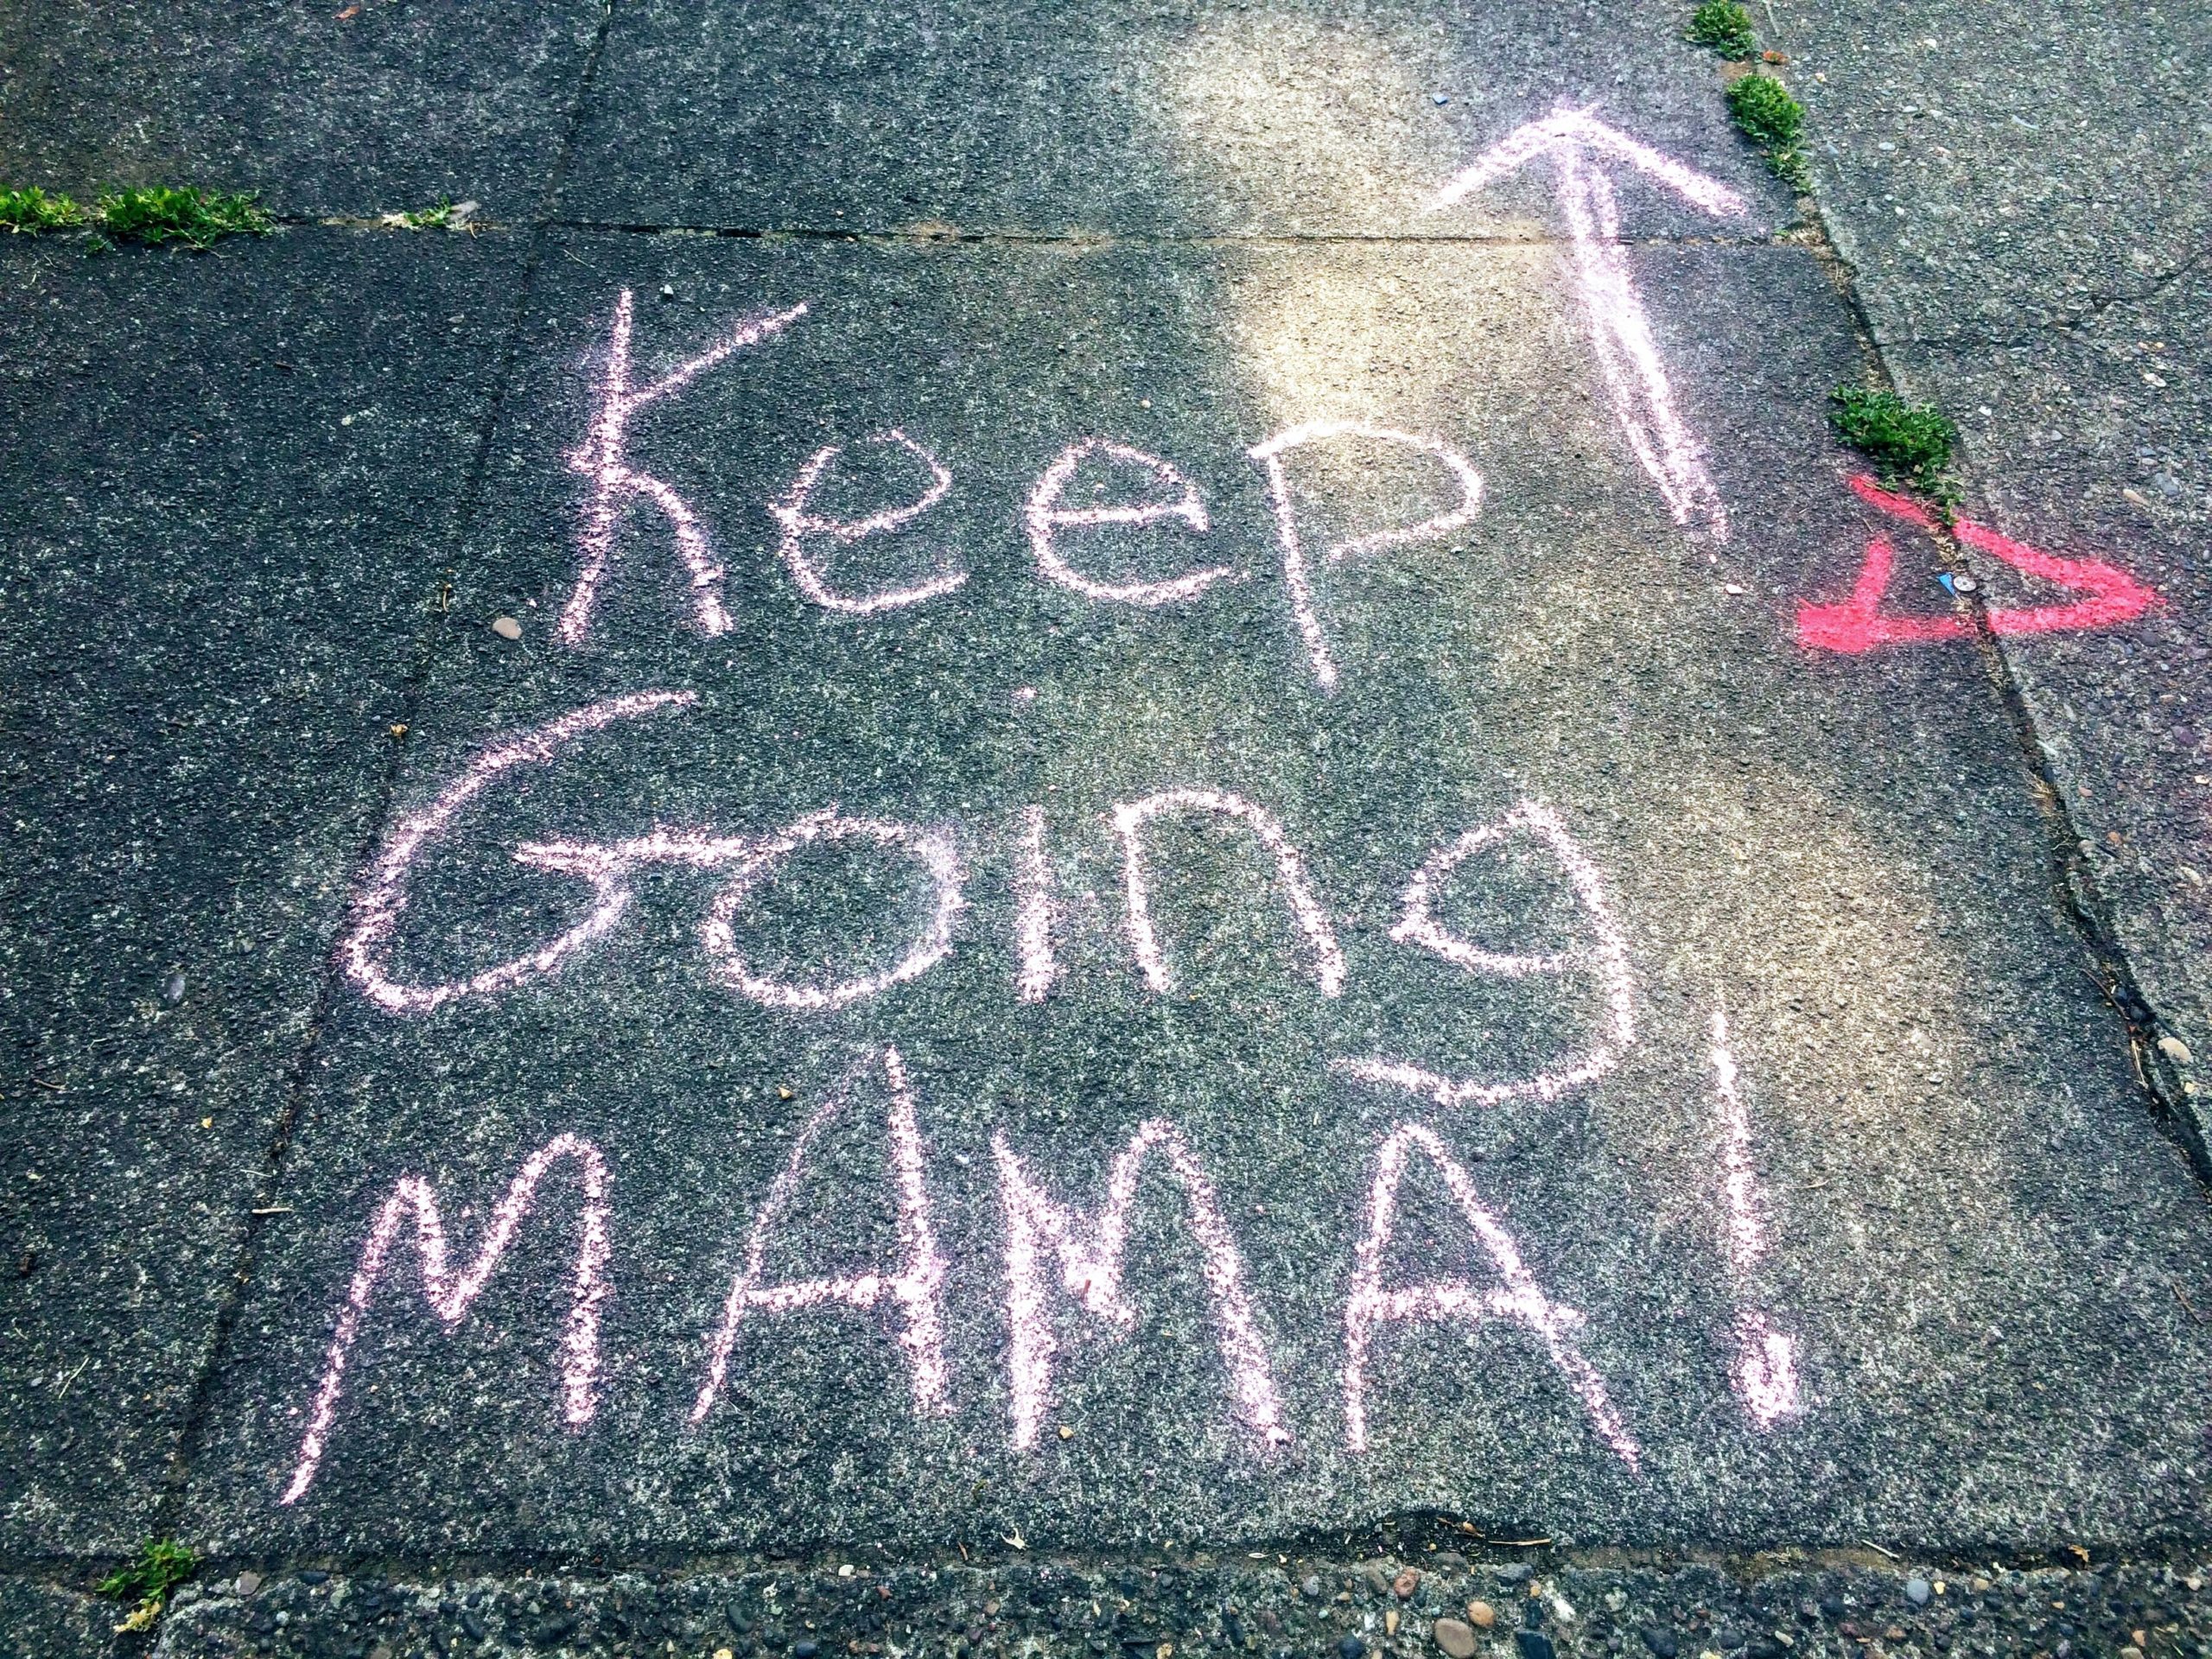 Keep Going Mama!